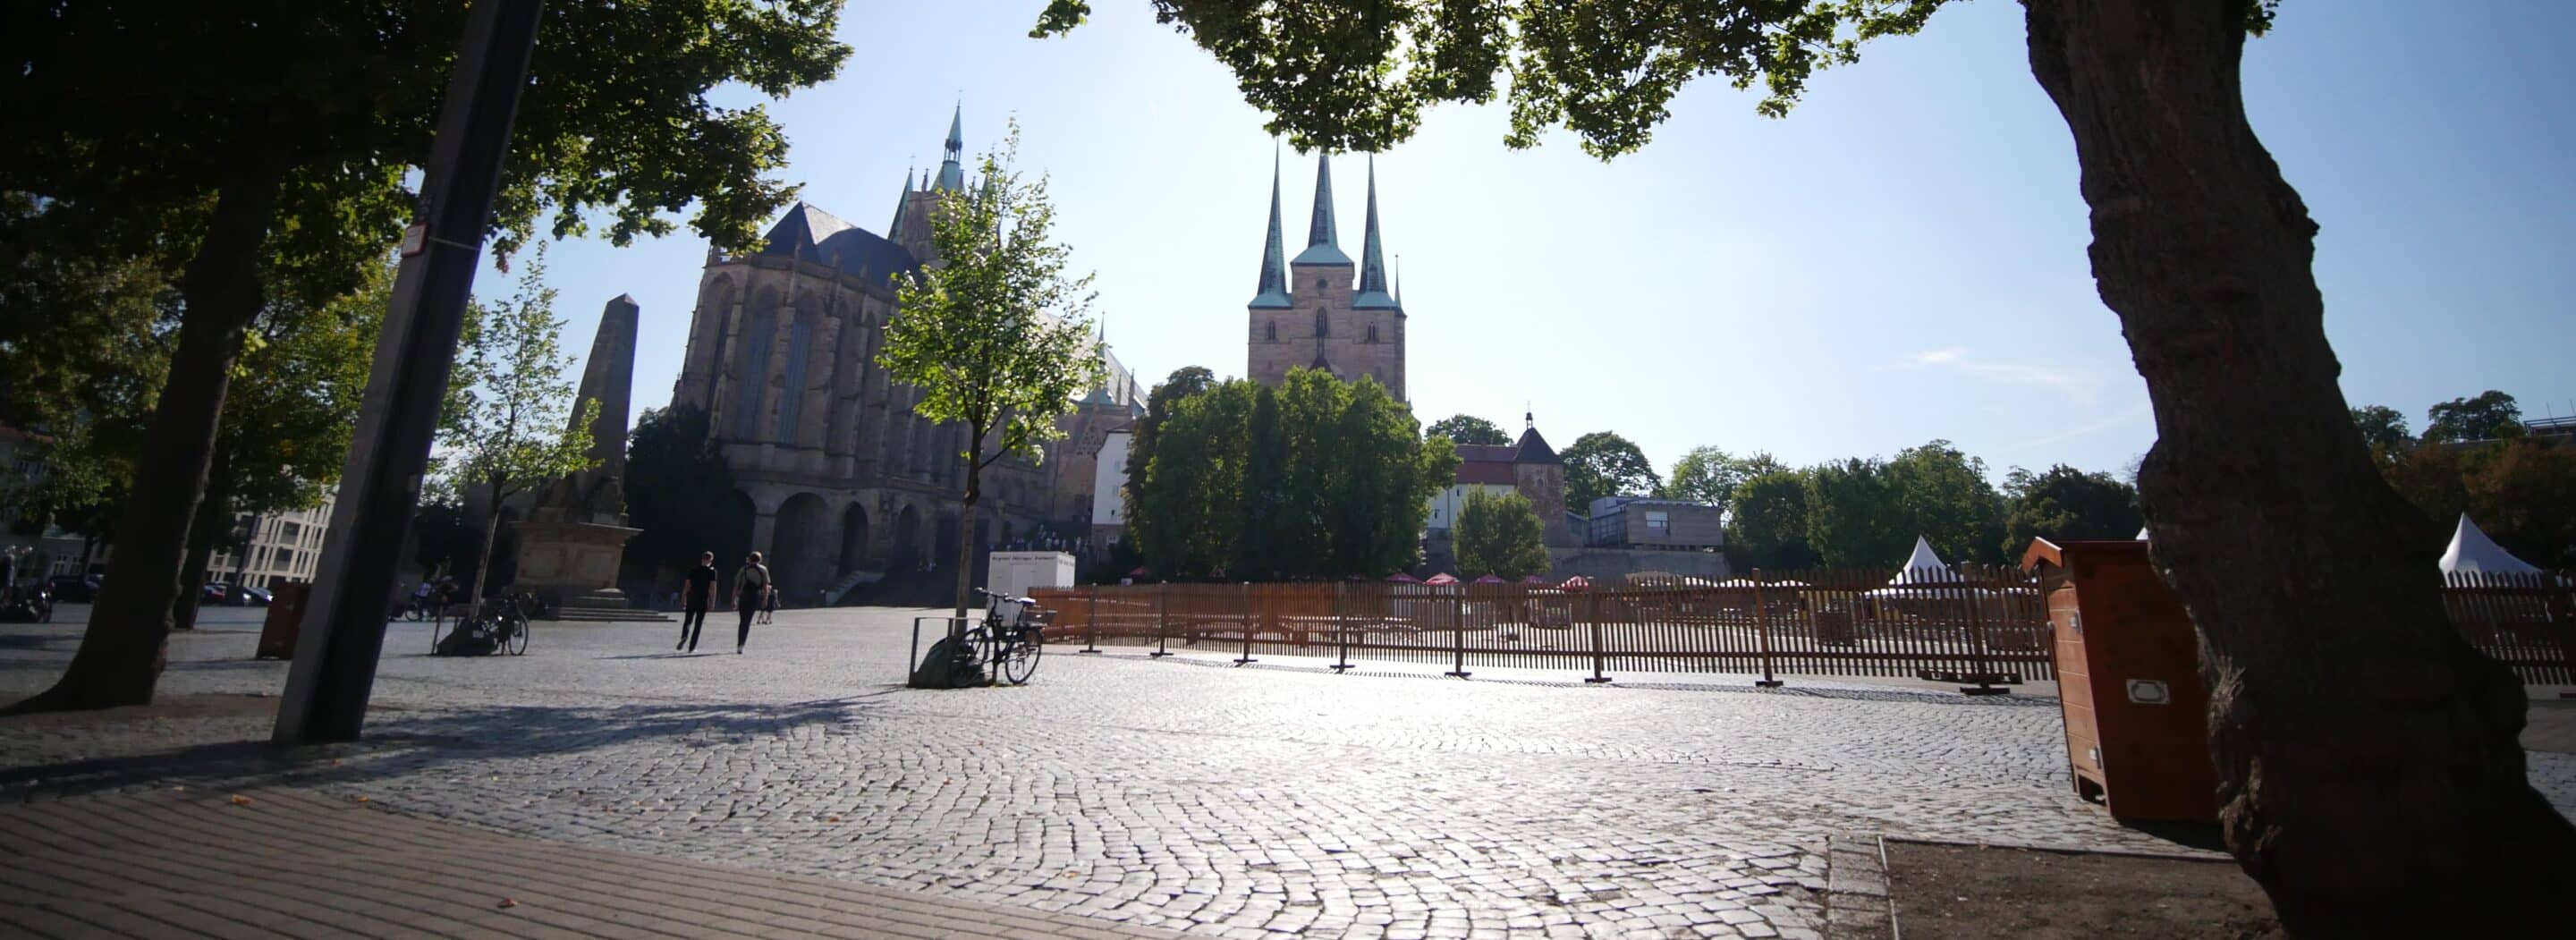 Domplatz Erfurt mit dem Erfurter Dom.